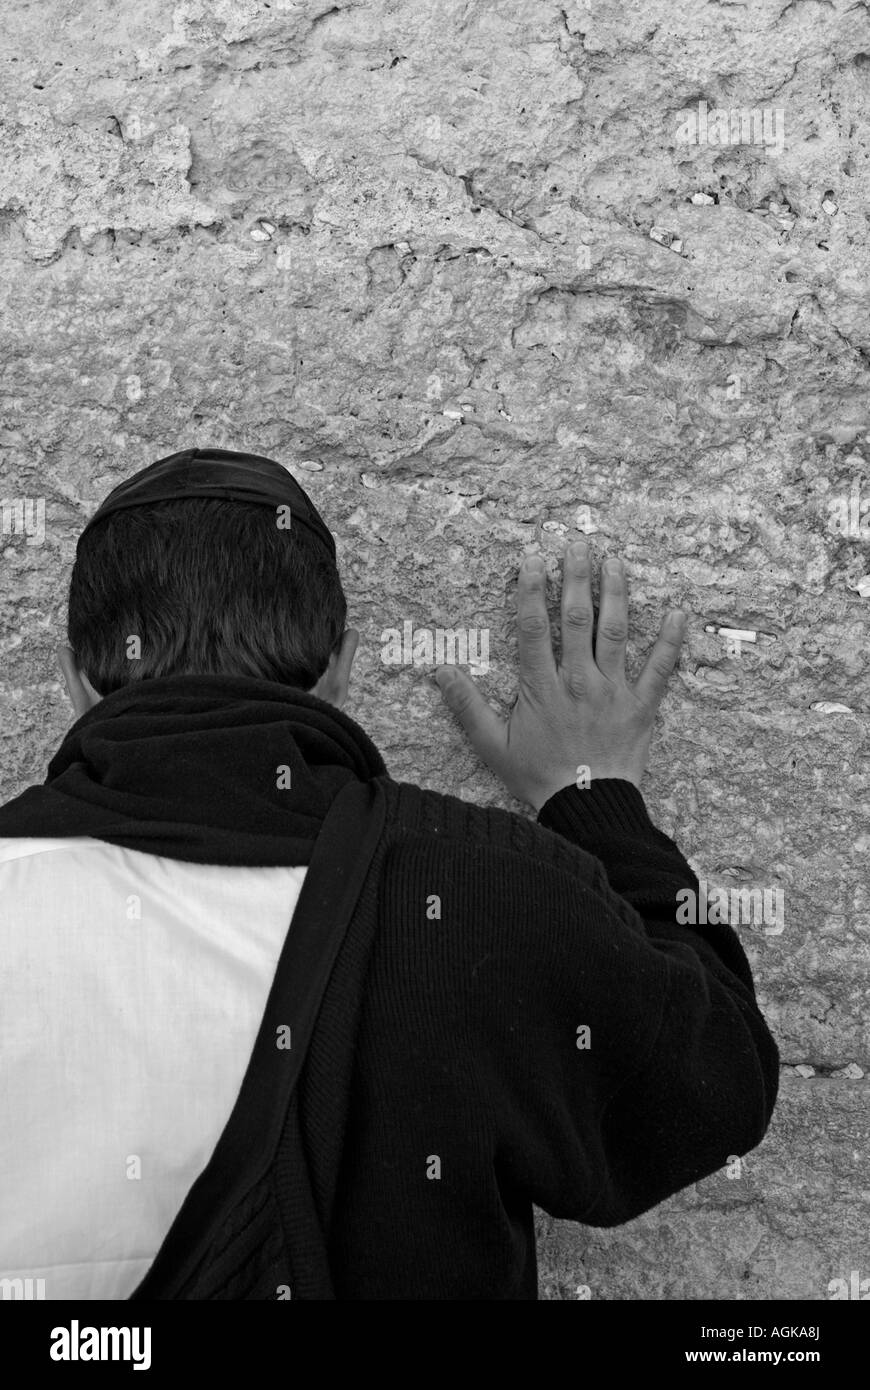 Israele Gerusalemme vecchia città il Muro del pianto Foto Stock